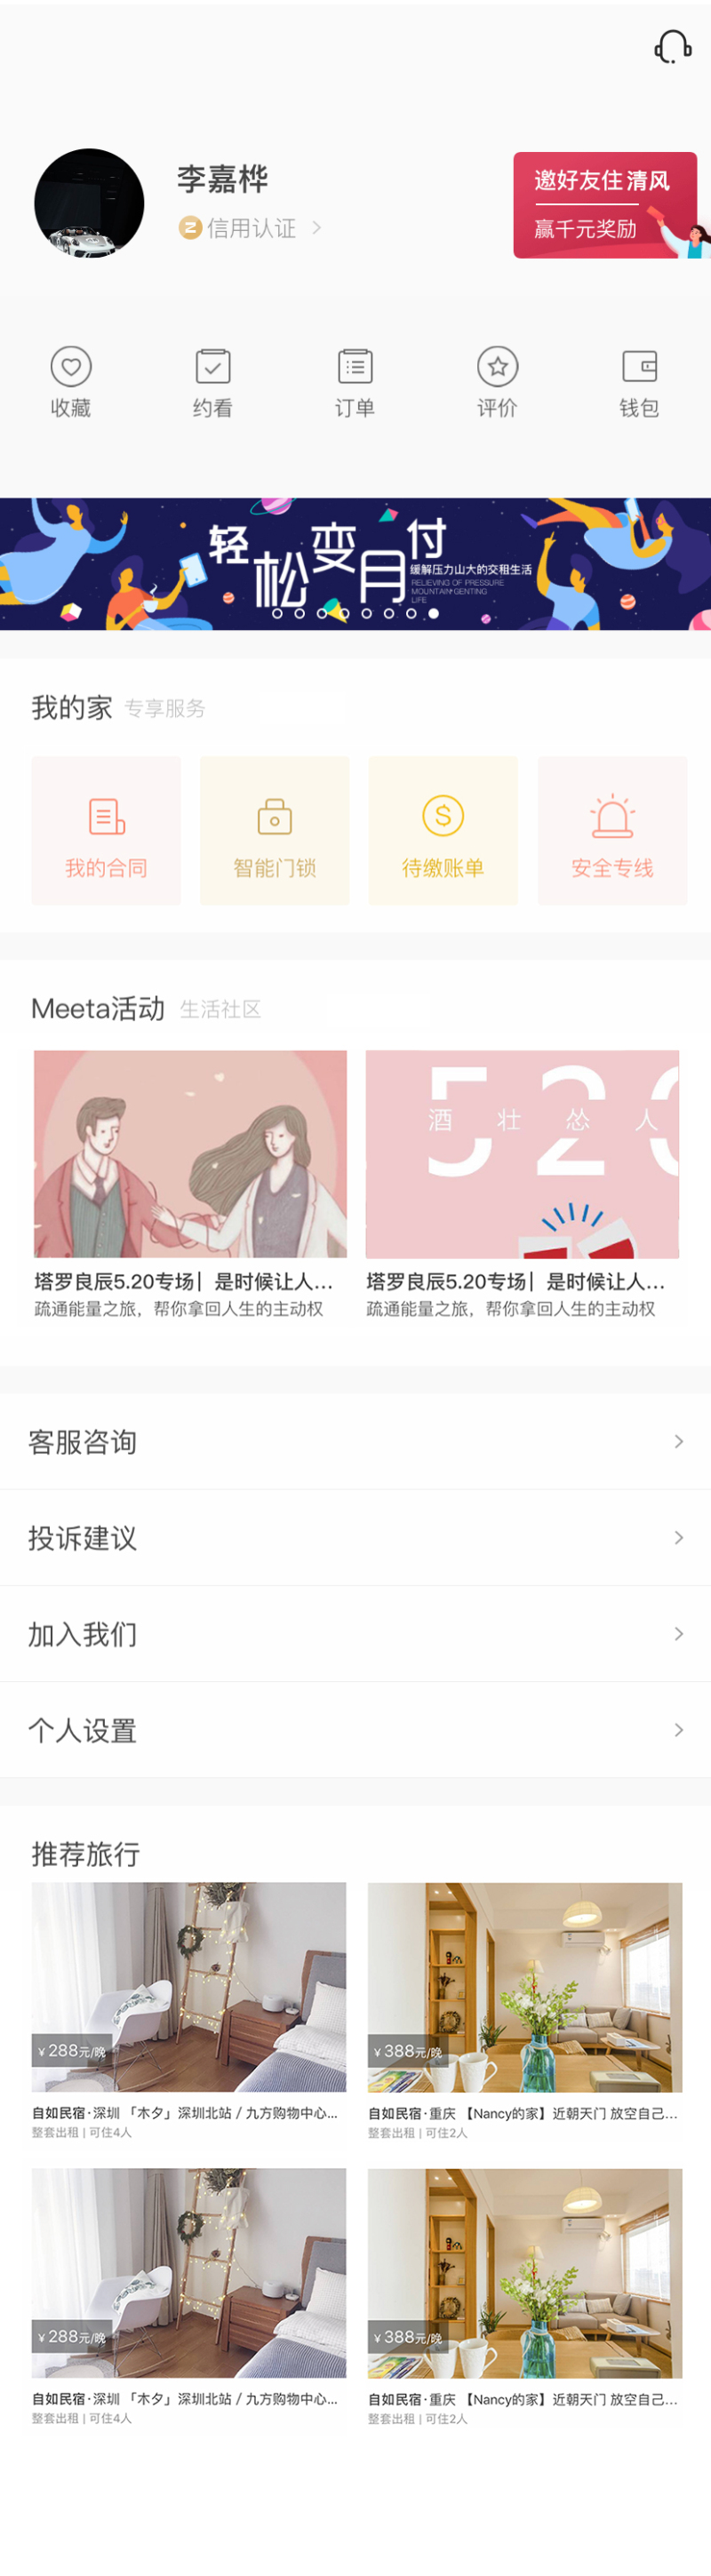 民宿app会员管理页面  html5网站源码下载 DIV+CSS代码下载